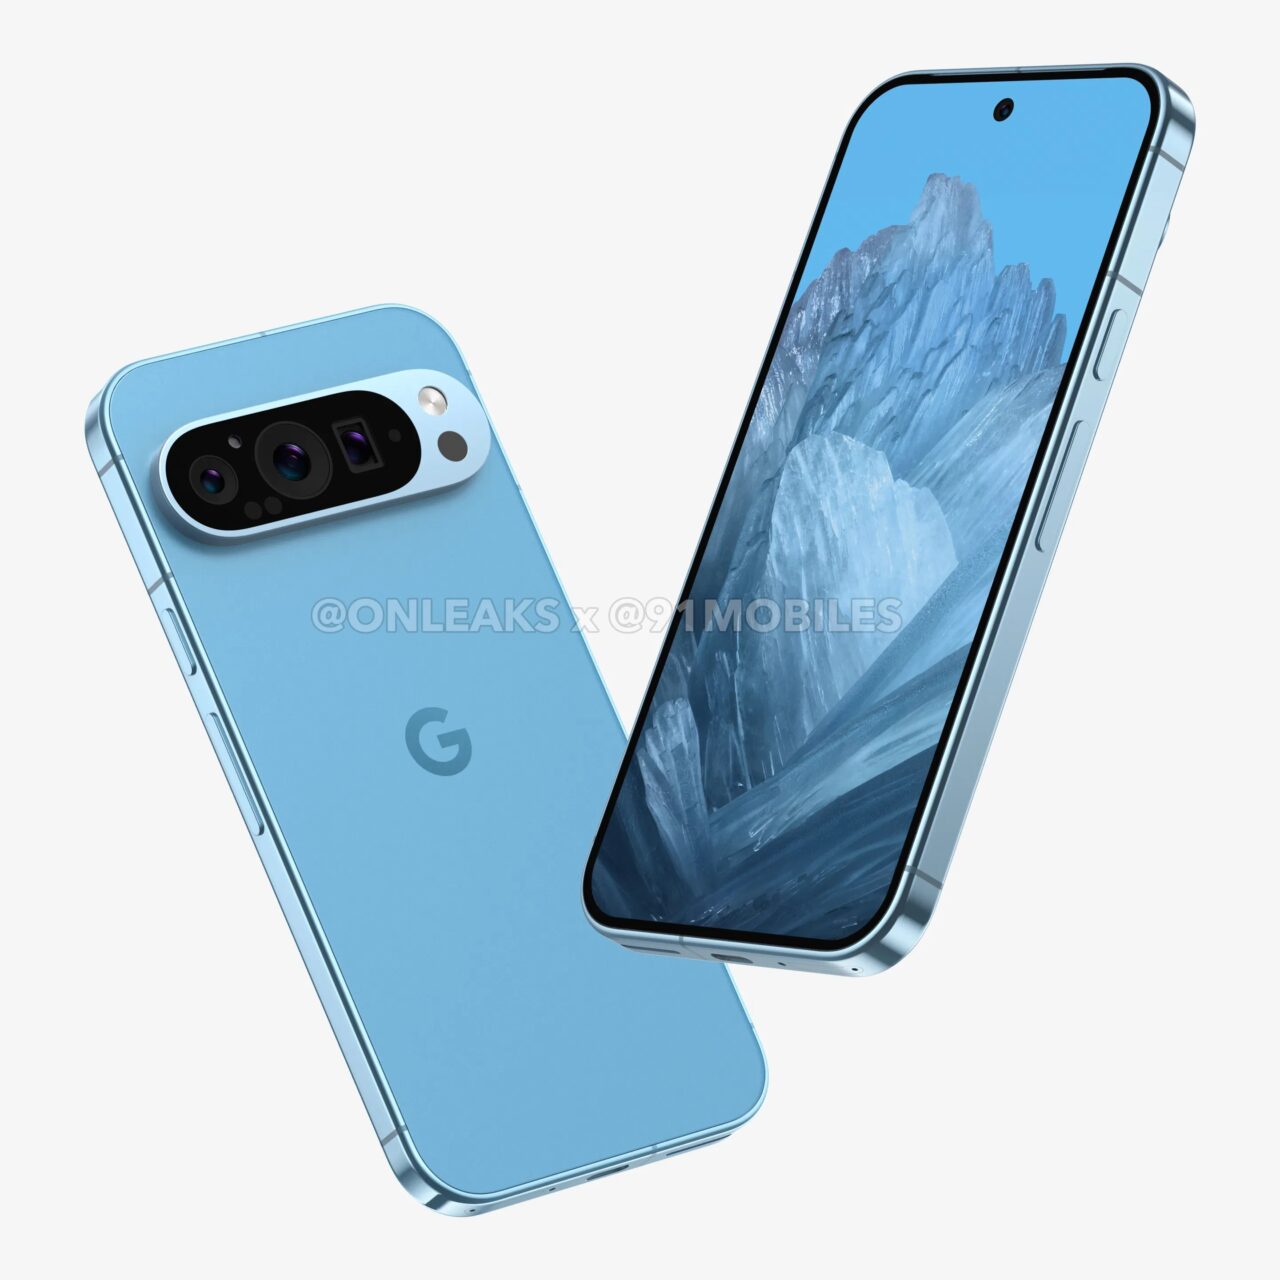 Niebieski smartfon z potrójnym aparatem z tyłu i logo Google, umieszczony na białym tle obok swojego odbicia z włączonym ekranem wyświetlającym grafikę gór.